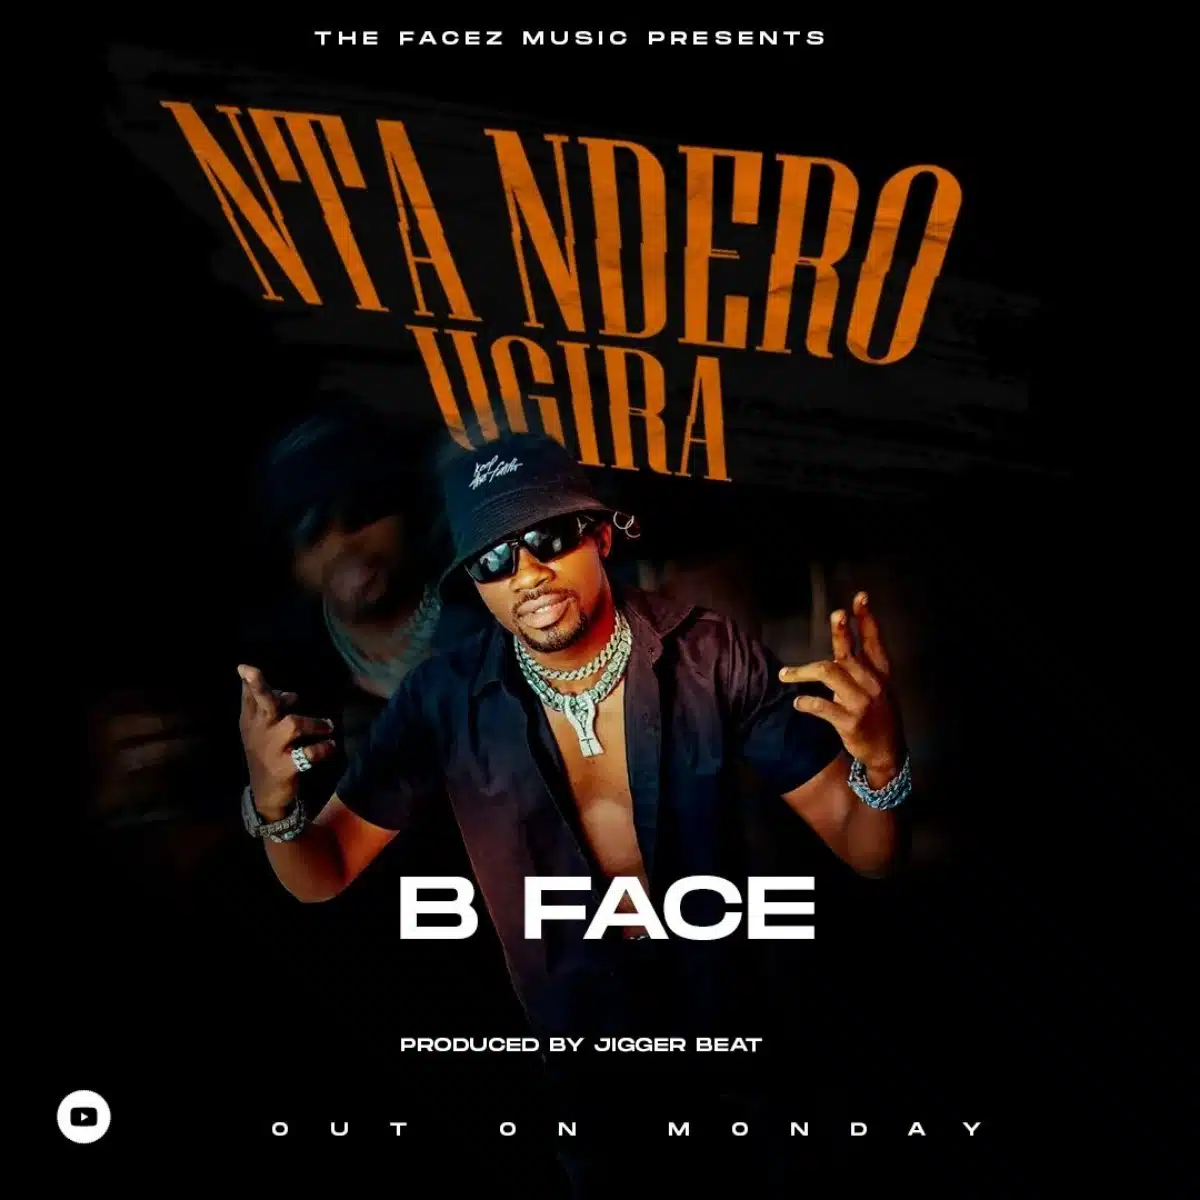 DOWNLOAD: B Face – “Ntandero Ugira” Mp3